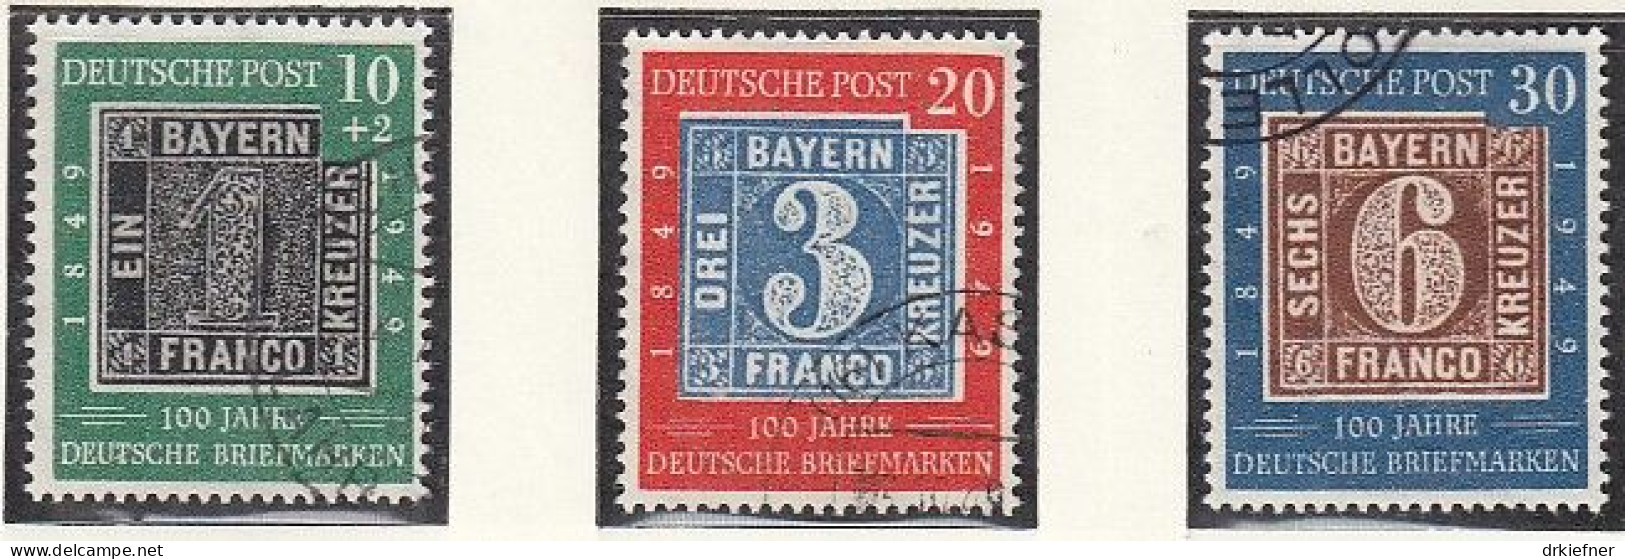 BRD  113-115, Gestempelt, 100 Jahre Deutsche Briefmarken, 1949 - Usati